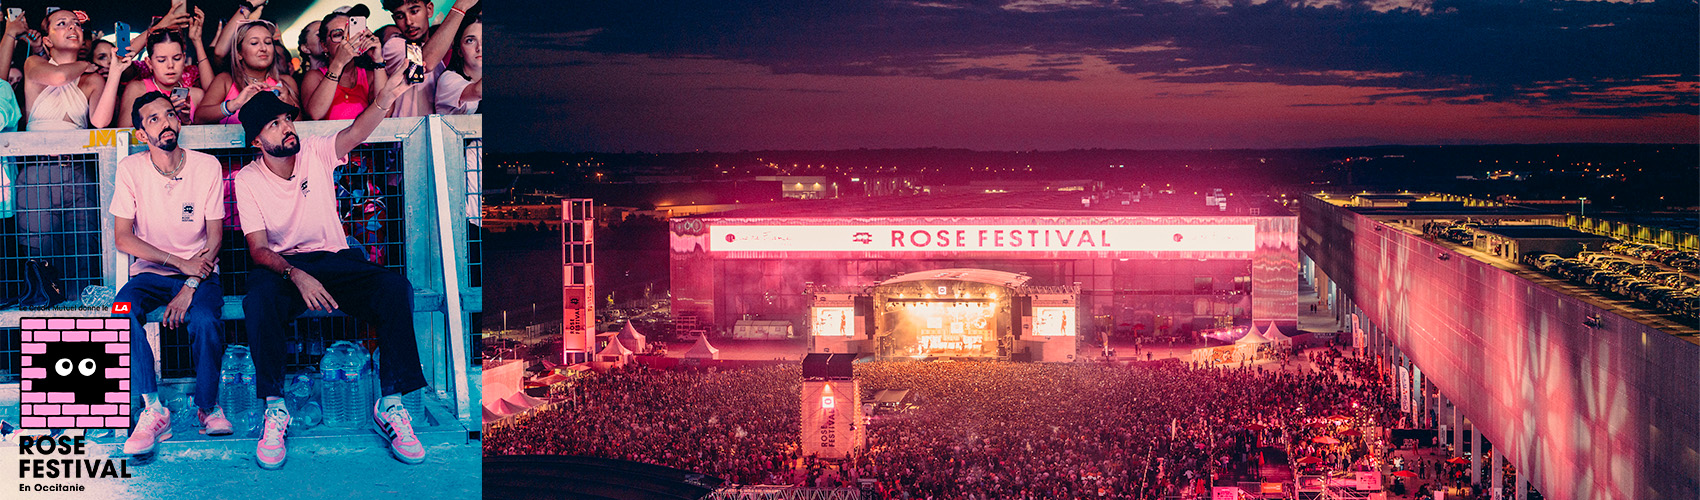 Partner establishment of the Rose Festival in Toulouse!